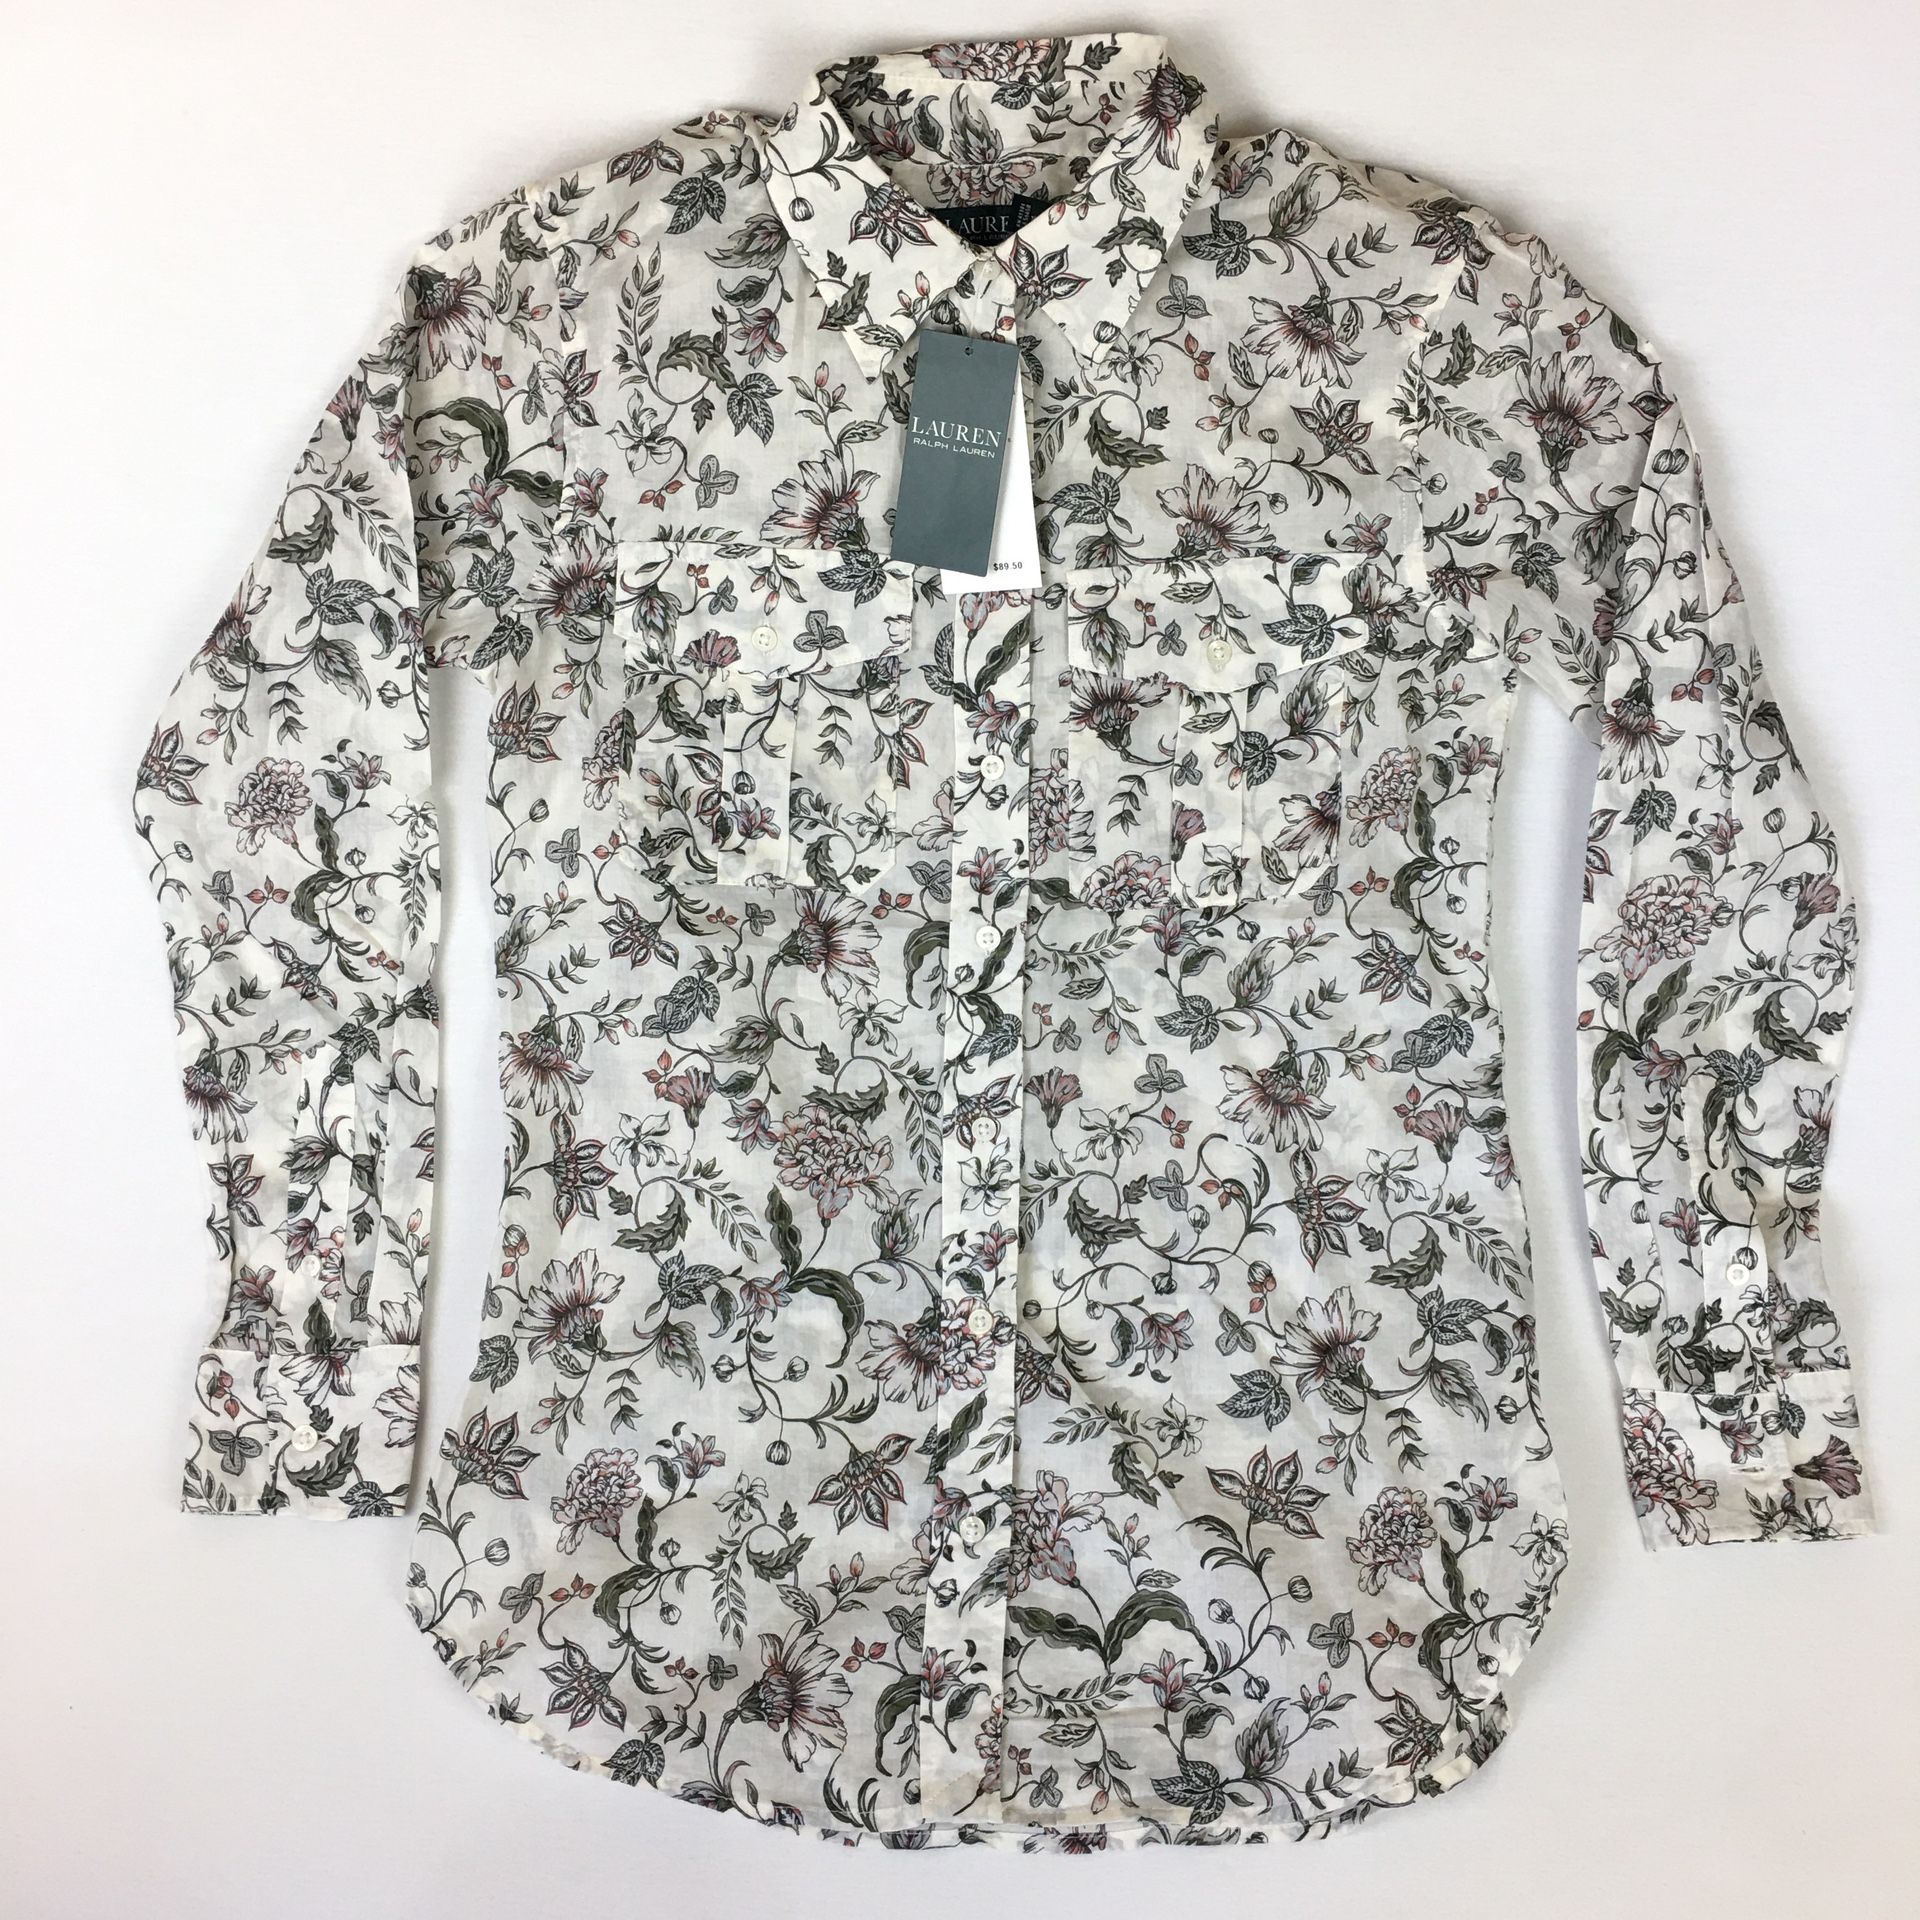 Lauren Ralph Lauren Shirt Floral Button Front Long Sleeve Semi Sheer Cream Women’s Sz XS NWT